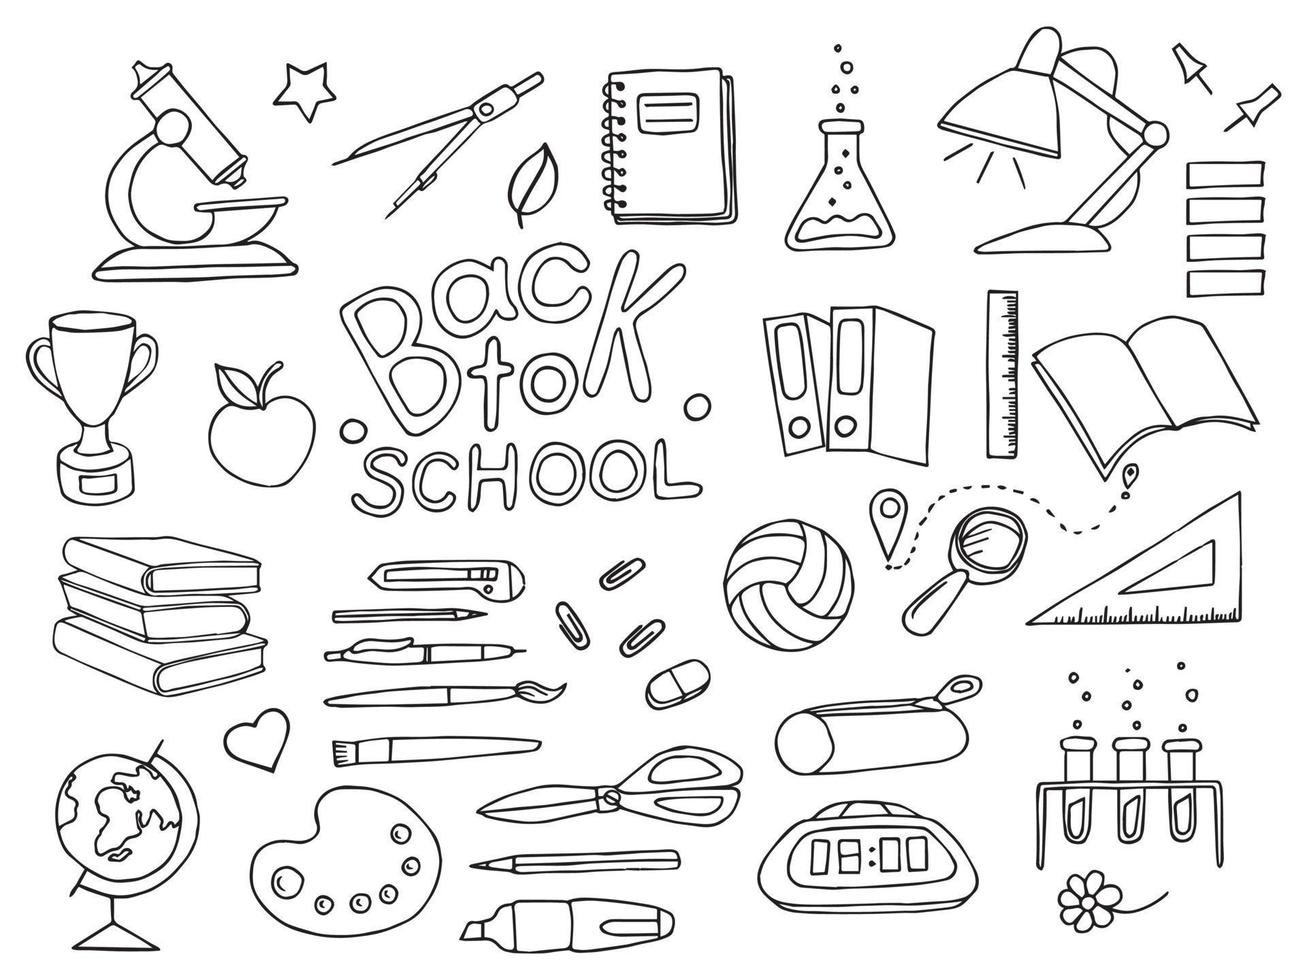 letras, elementos e iconos de regreso a la escuela. diseño incoloro. vector